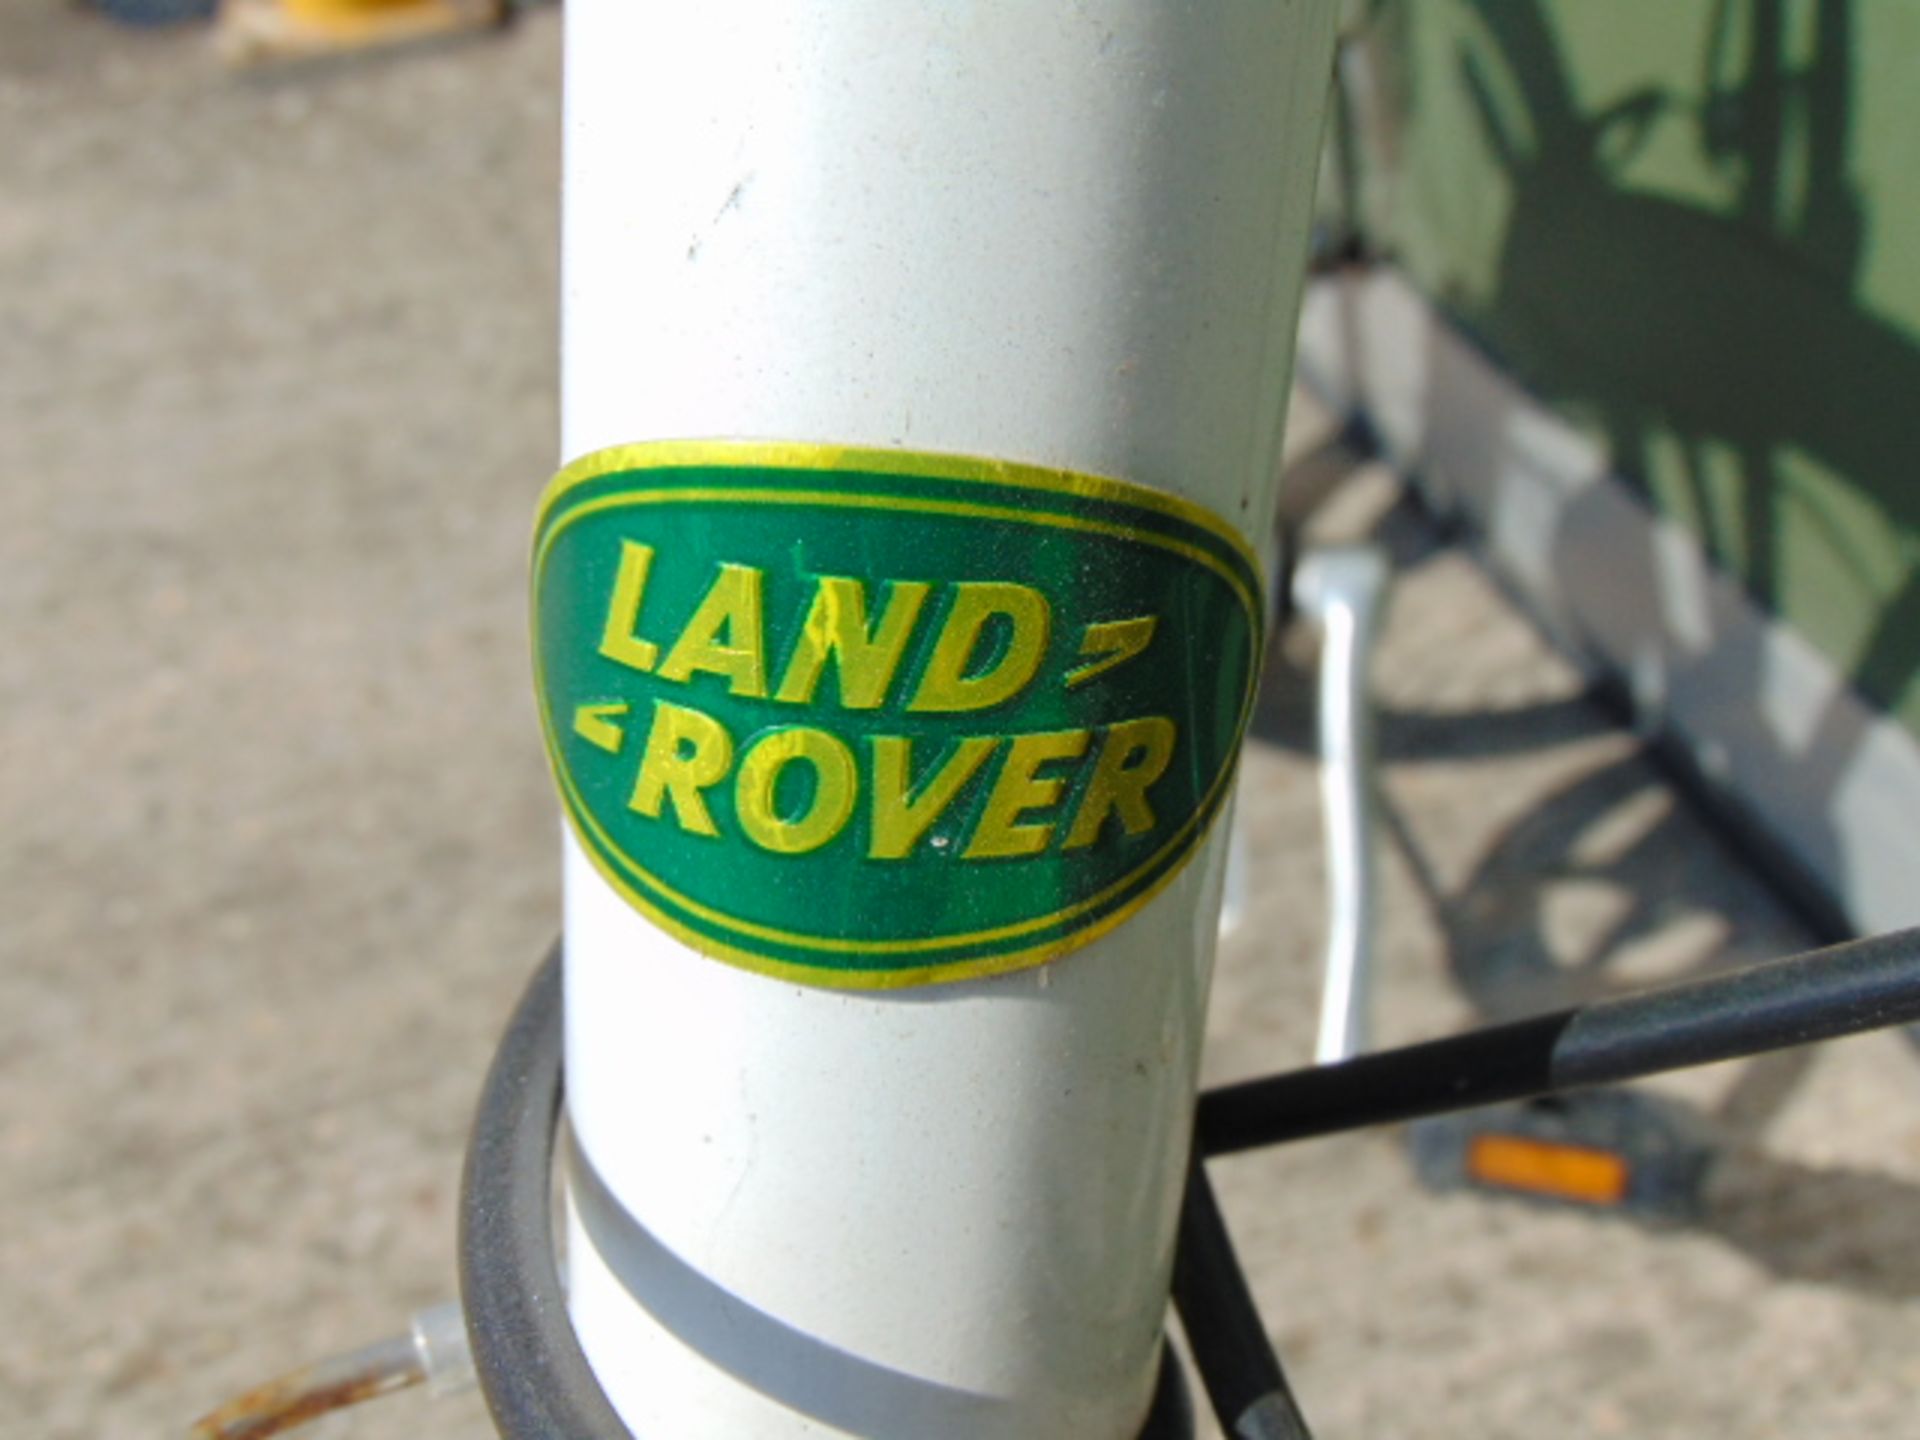 Very Rare Genuine and Original Land Rover City Lightweight Folding Bike - Image 8 of 8